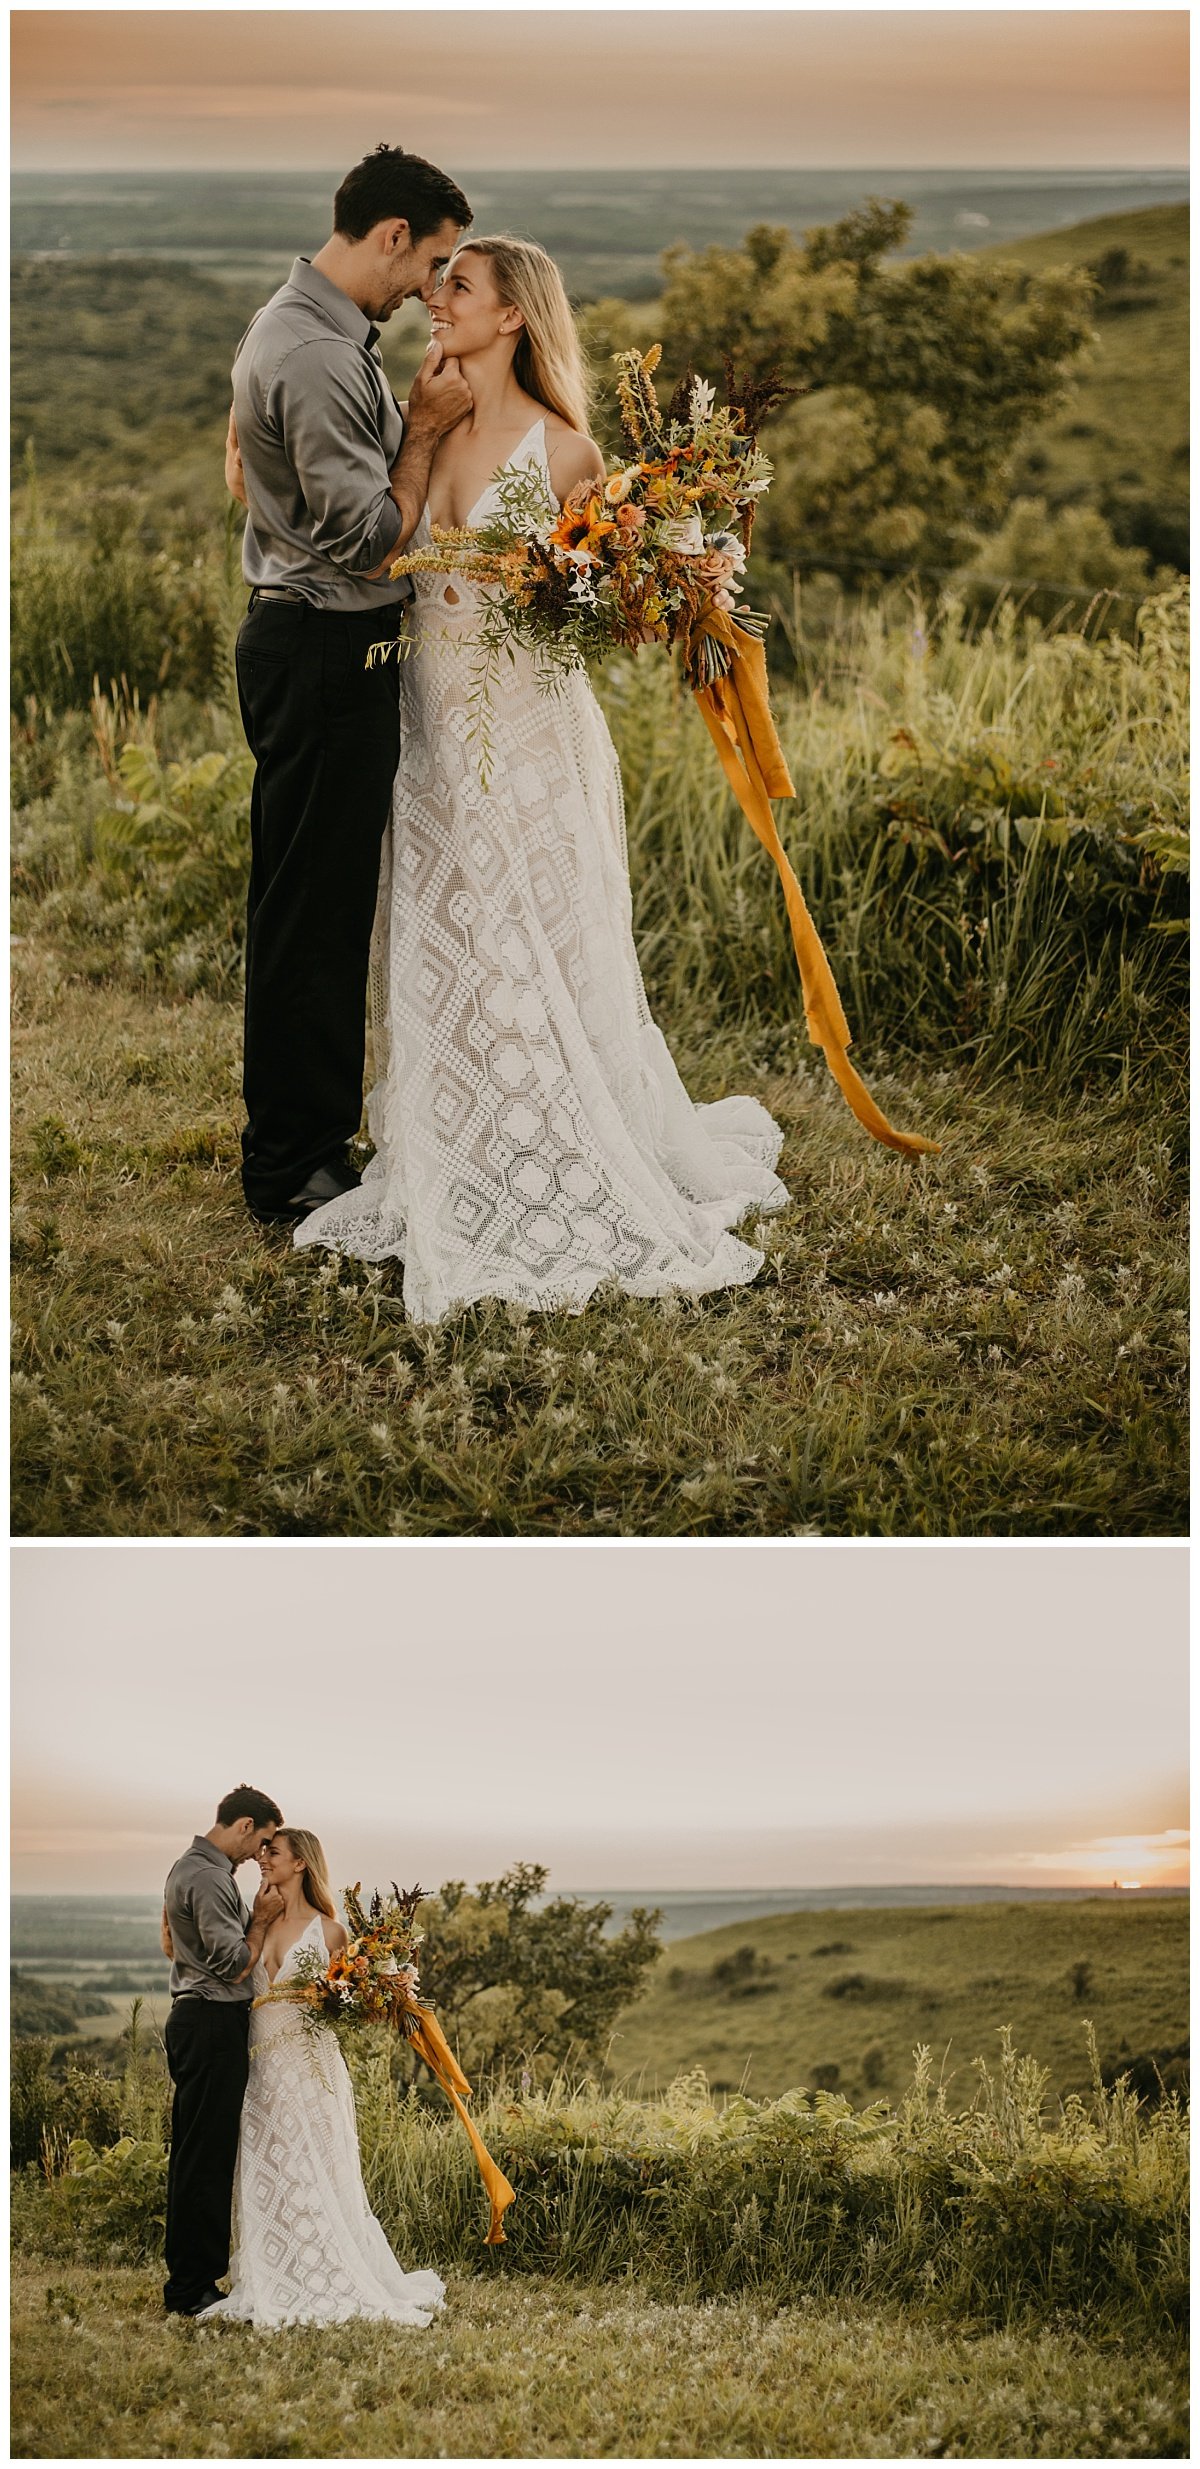 Flint+Hills+Elopement+_+Kansas+City+Wedding+Photographer+_+Outdoor+Wedding+_+Reclamation+Wedding+Dress+_+Vintage+Wedding+Dress_+Colorado+Elopement (2).jpeg